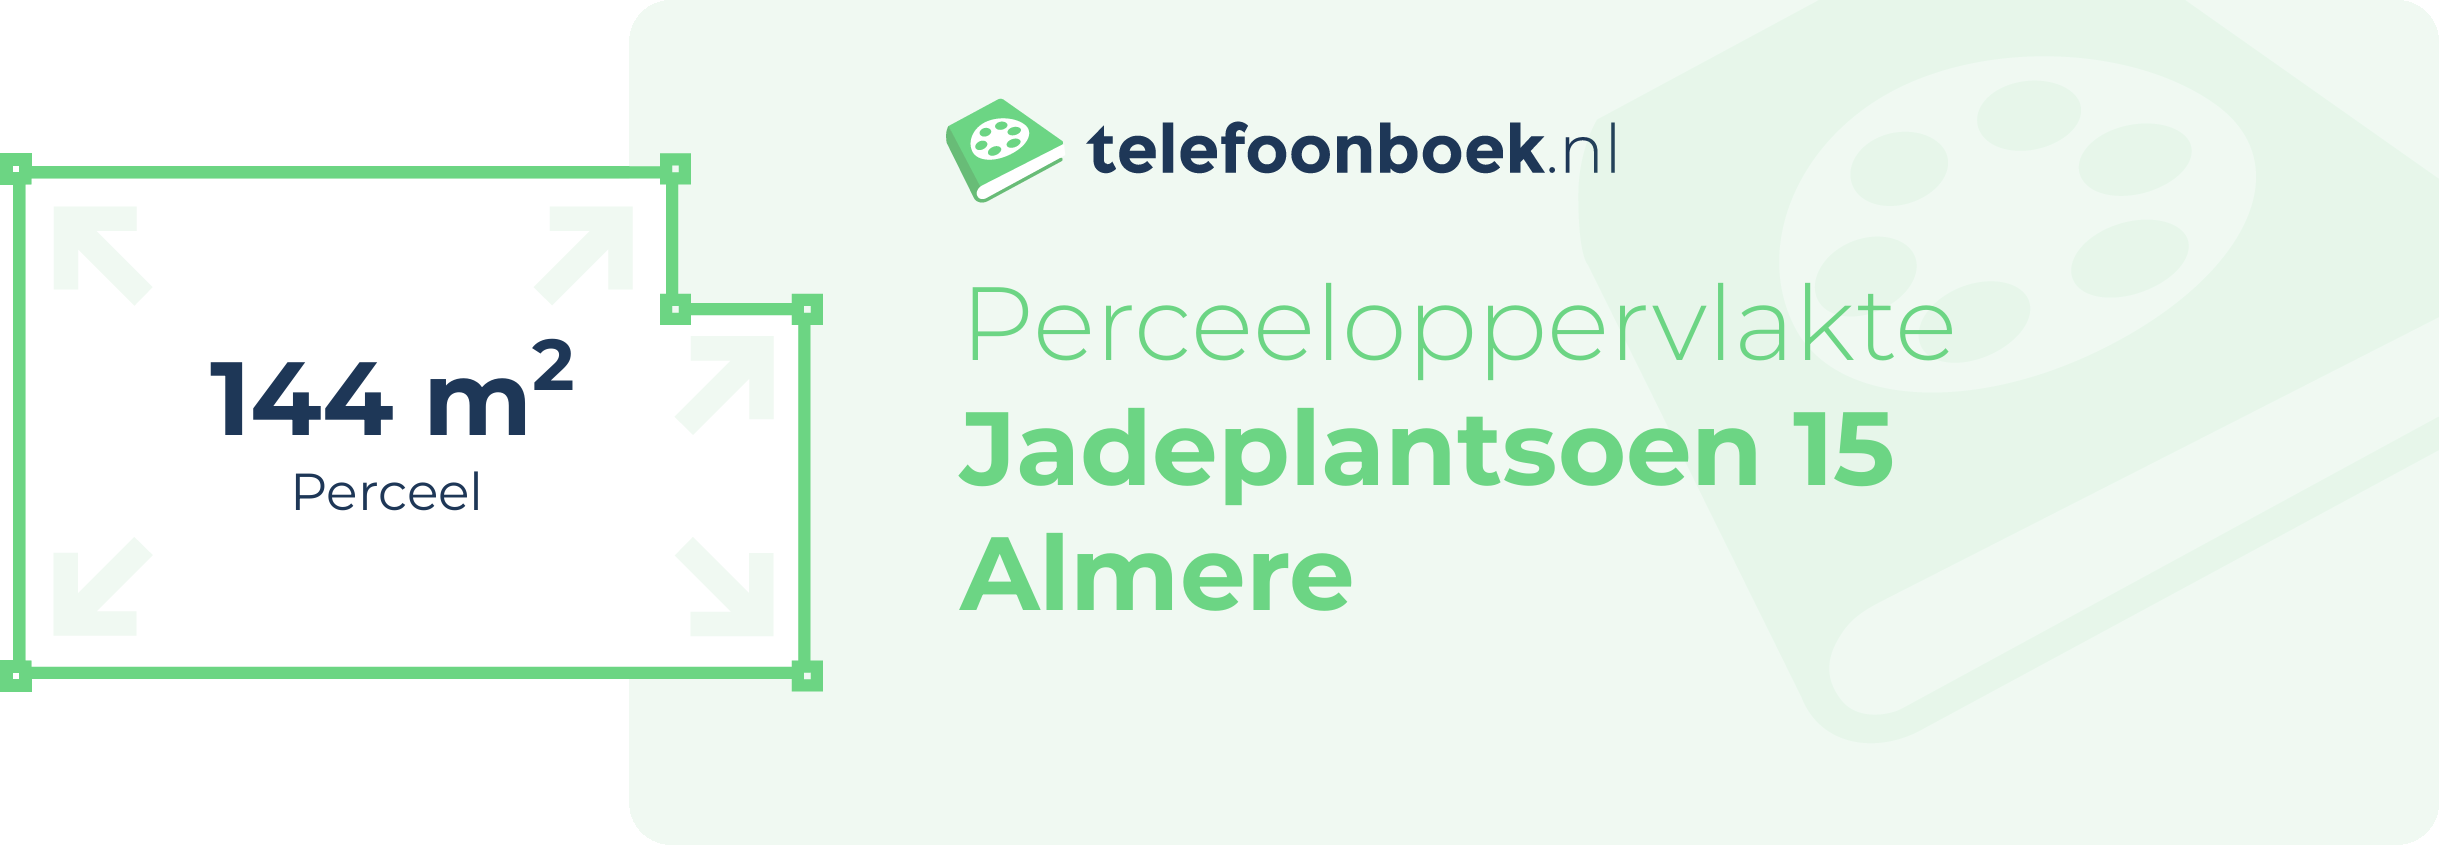 Perceeloppervlakte Jadeplantsoen 15 Almere